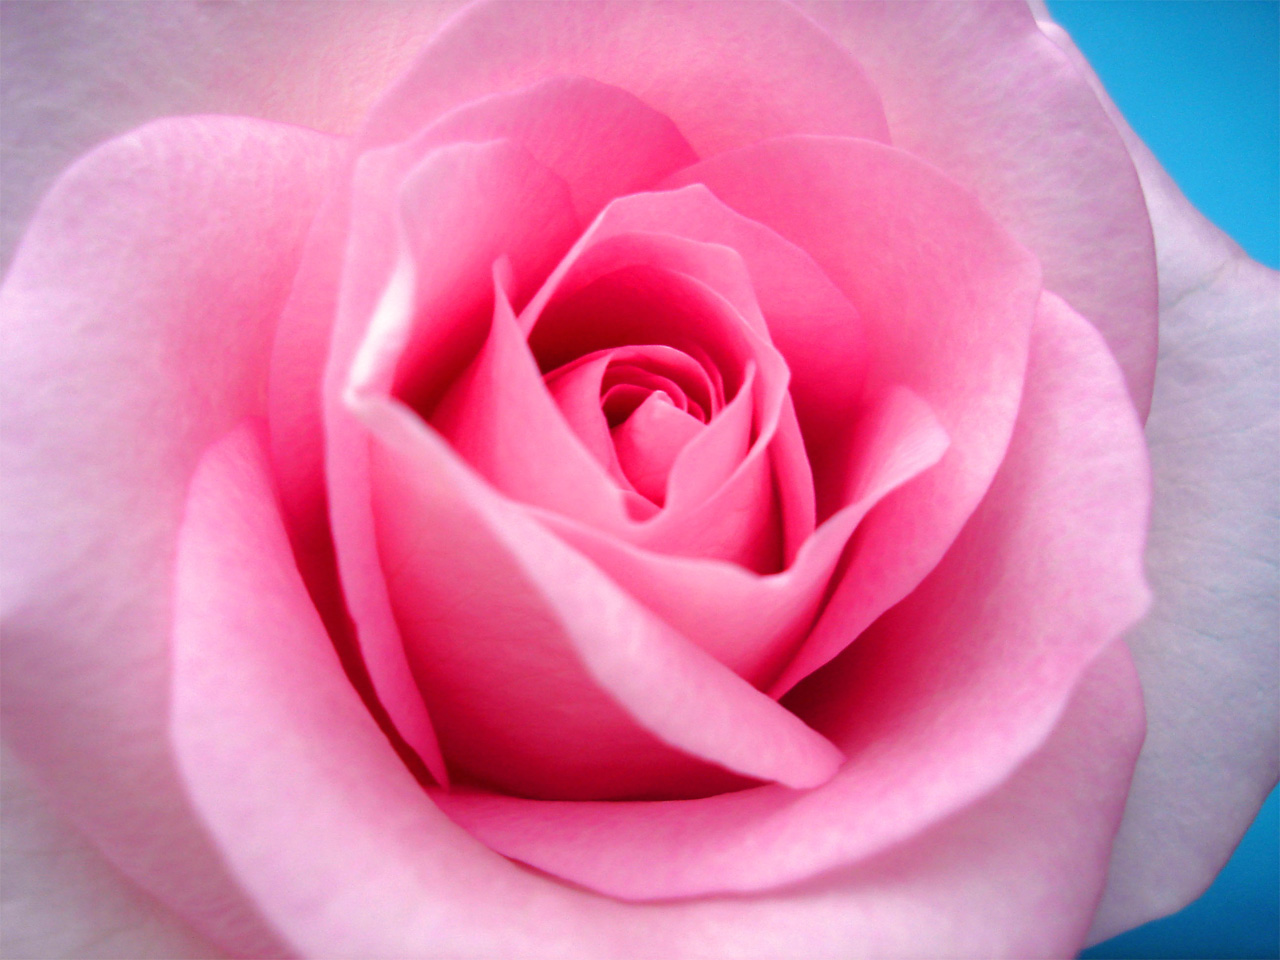 lovely rose wallpaper,flower,petal,garden roses,flowering plant,pink